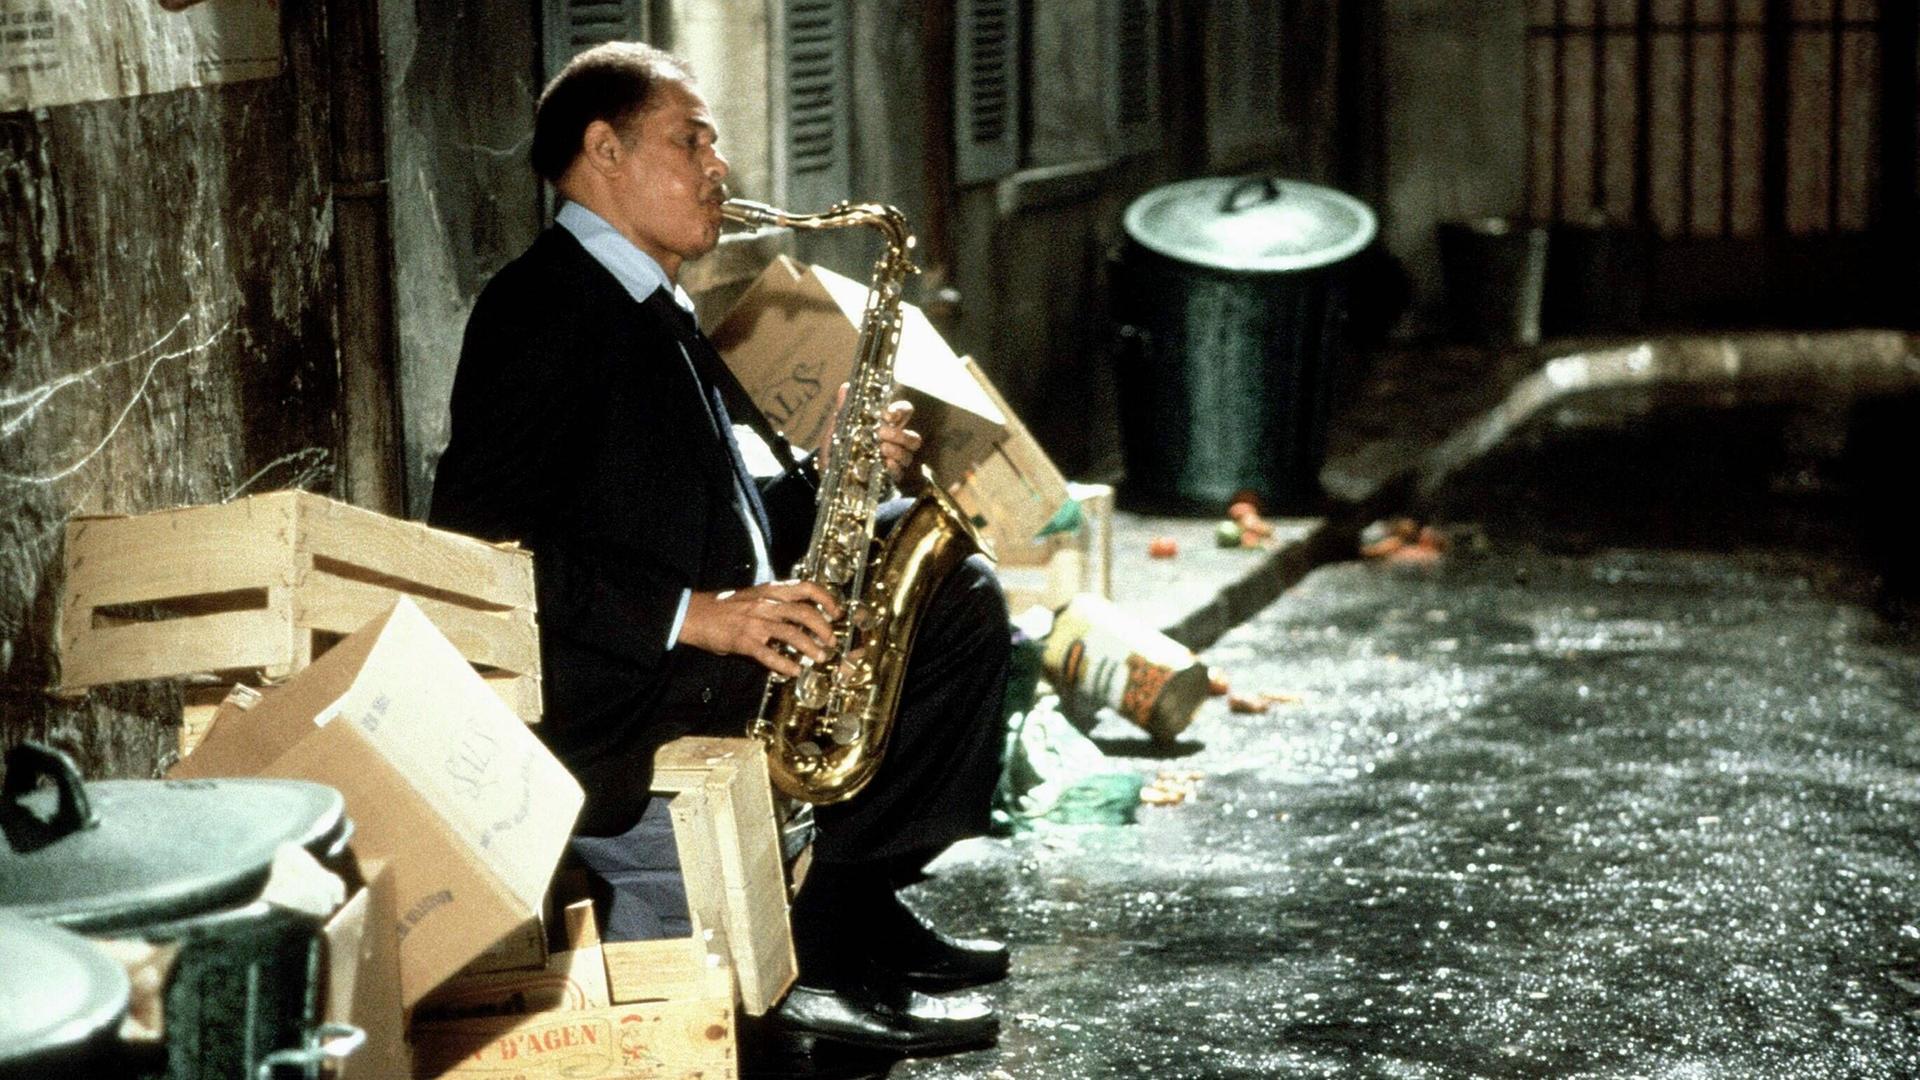 Ein Mann spielt in einem mit Kisten und Mülltonnen vollgestellten Hinterhof sitzend auf seinem Saxofon.